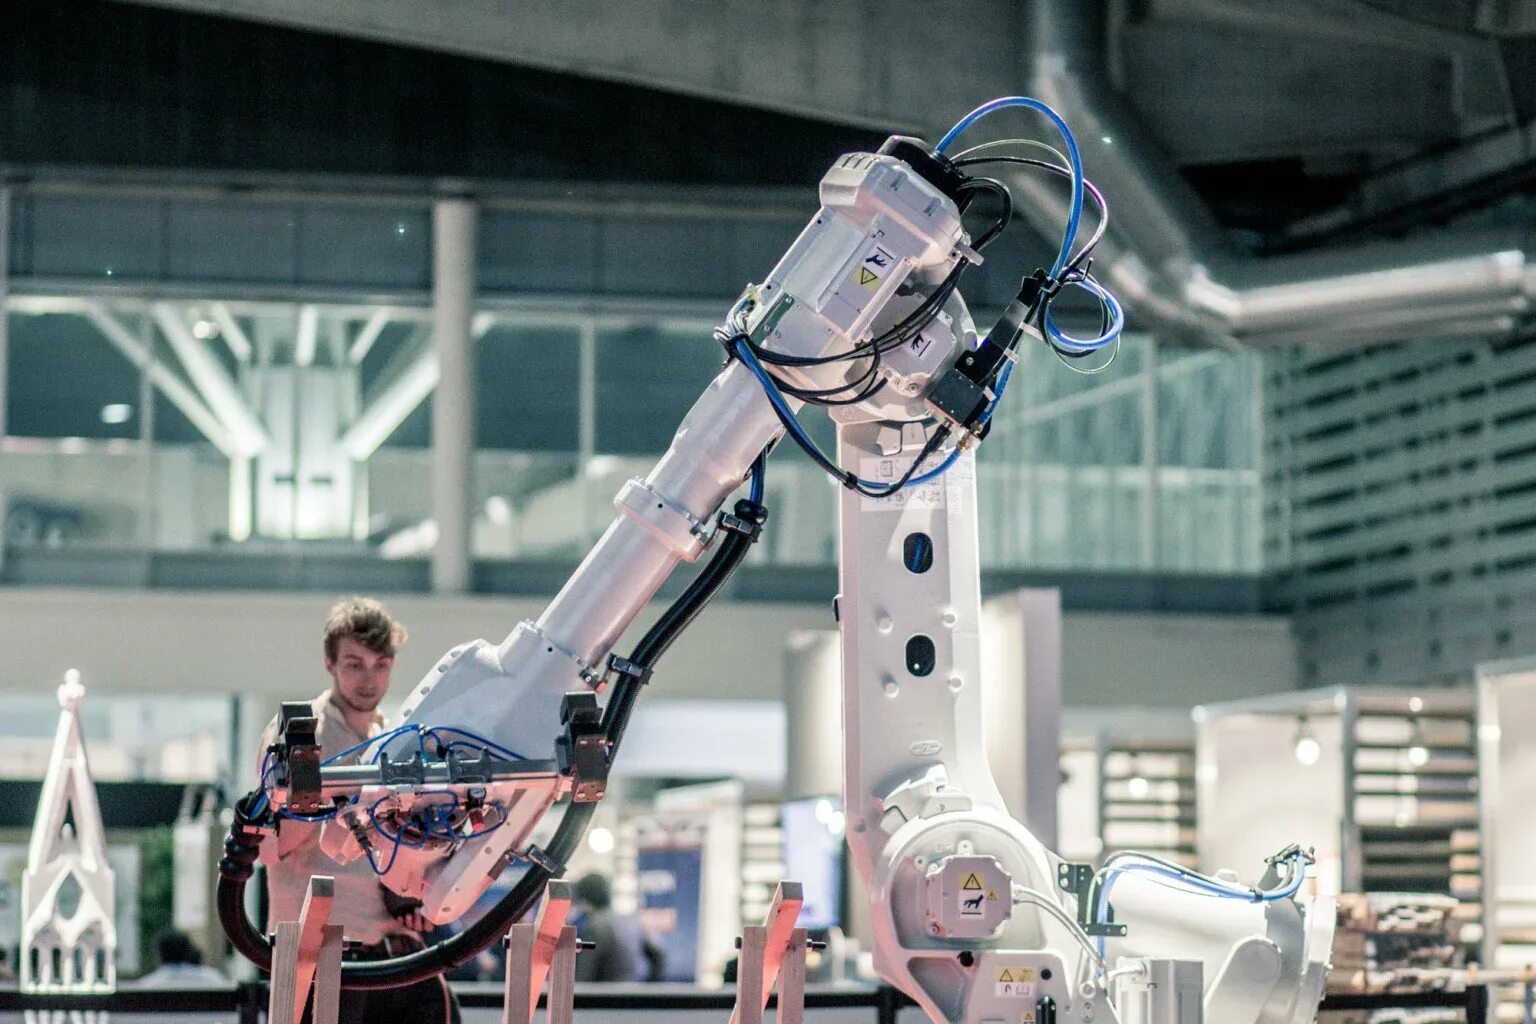 Цех робототехники. Мастерская робототехники. Роботизированная сварка. Генетический робот.